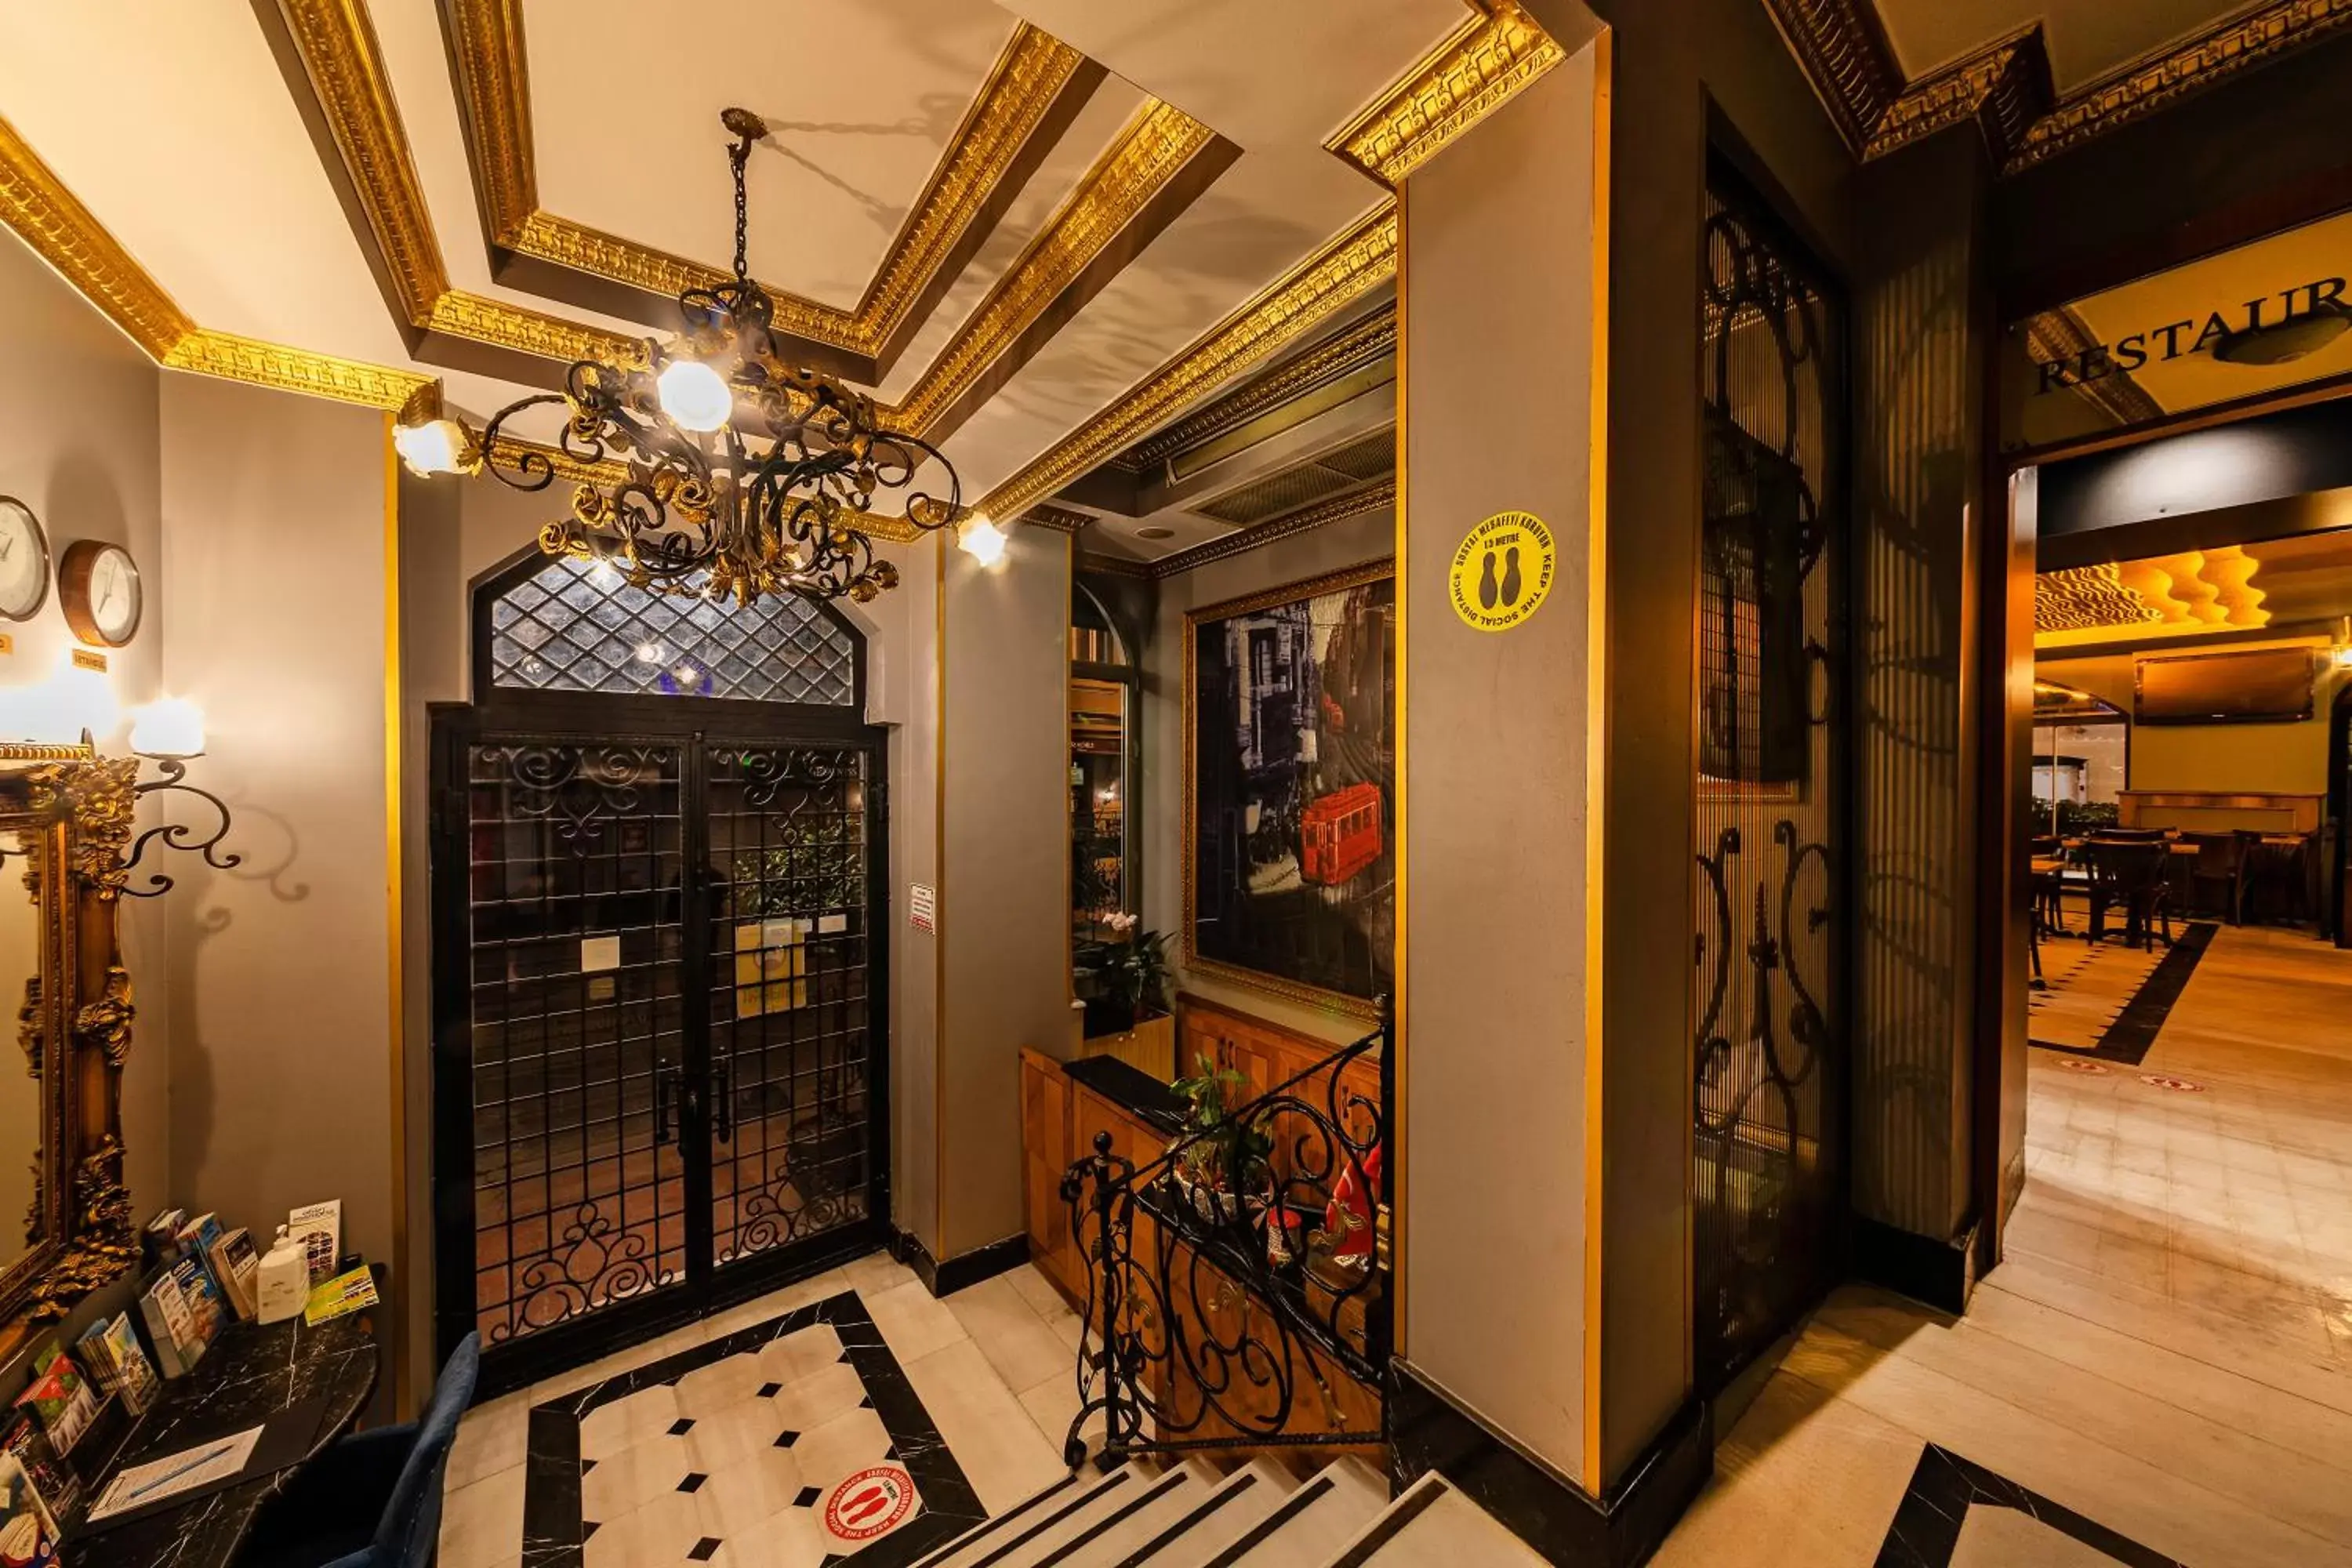 Lobby or reception in Santa Ottoman Hotel